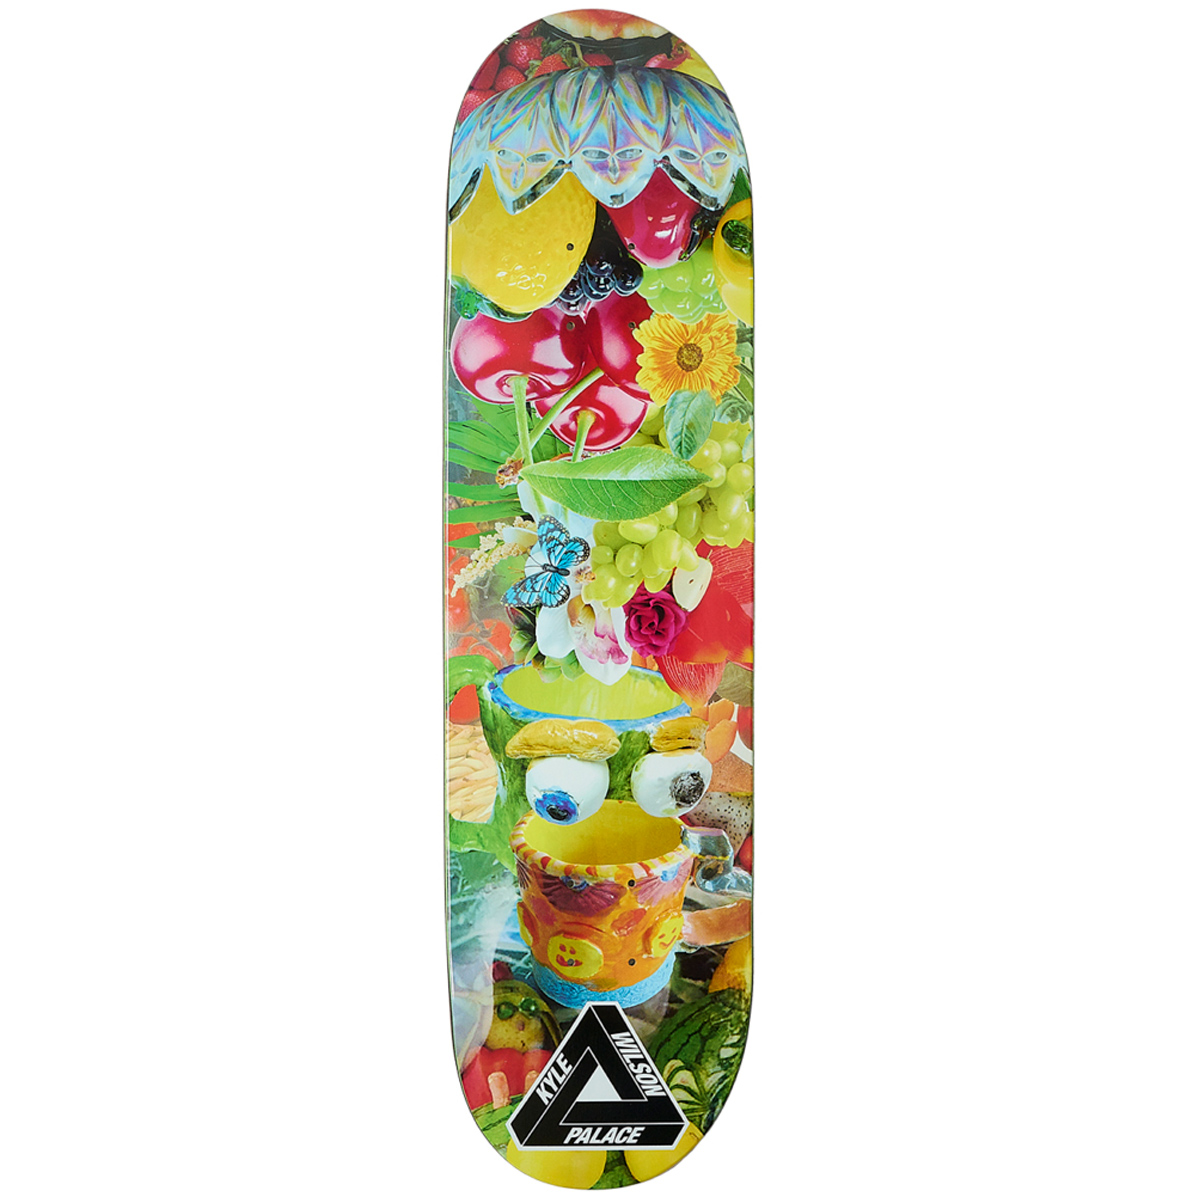 Palace Kyle Skateboard Deck 8.375